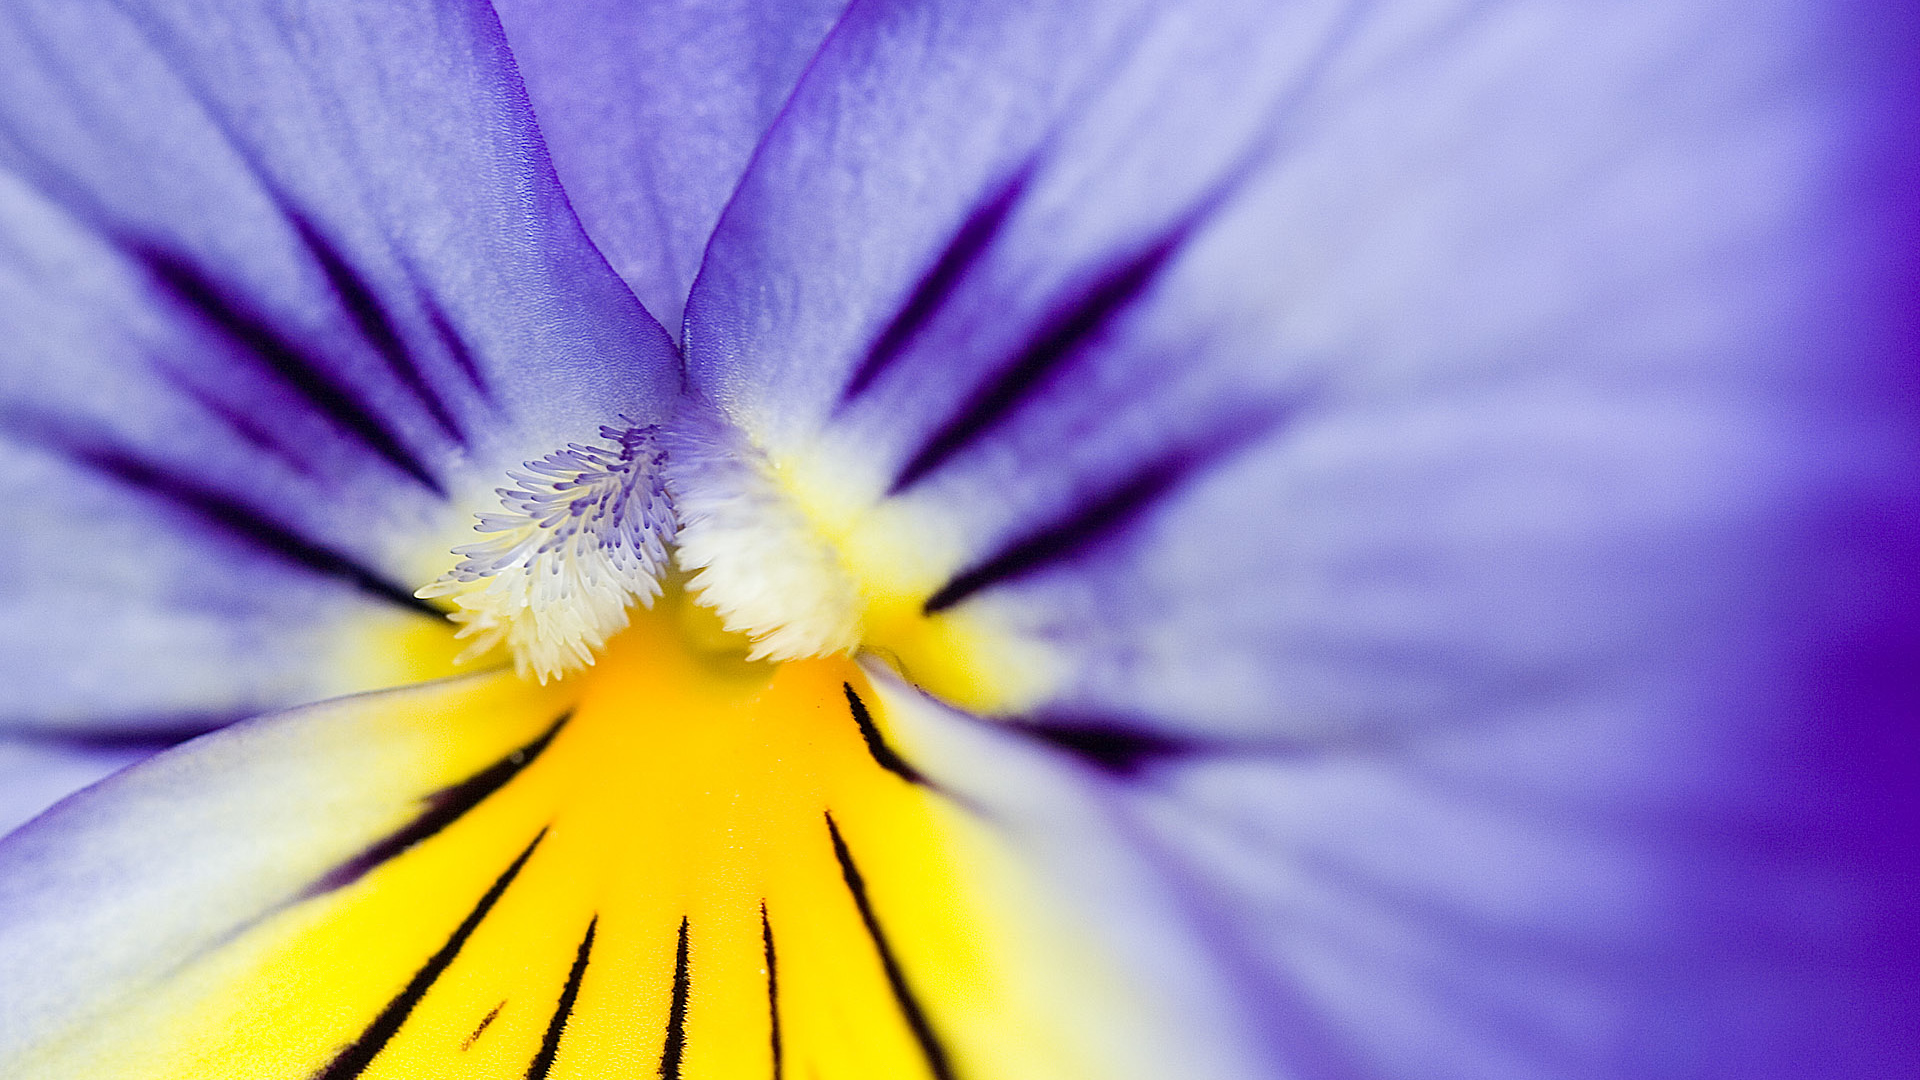 Free download wallpaper Flowers, Iris, Flower, Earth on your PC desktop